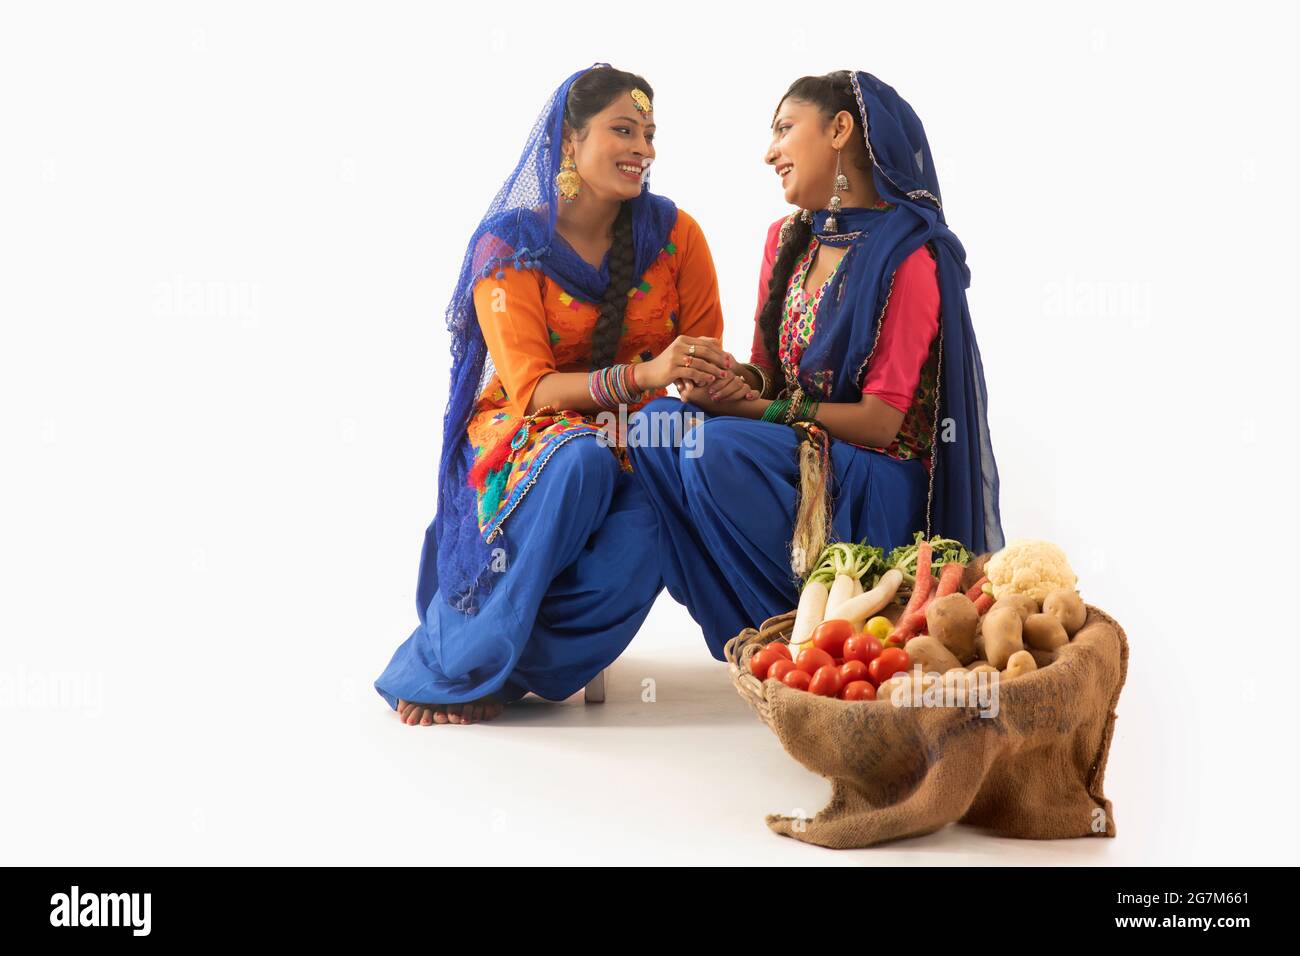 Zwei Frauen im Giddha Kostüm sitzen zusammen und halten Hände mit einem Gemüskorb an ihrer Seite. Stockfoto